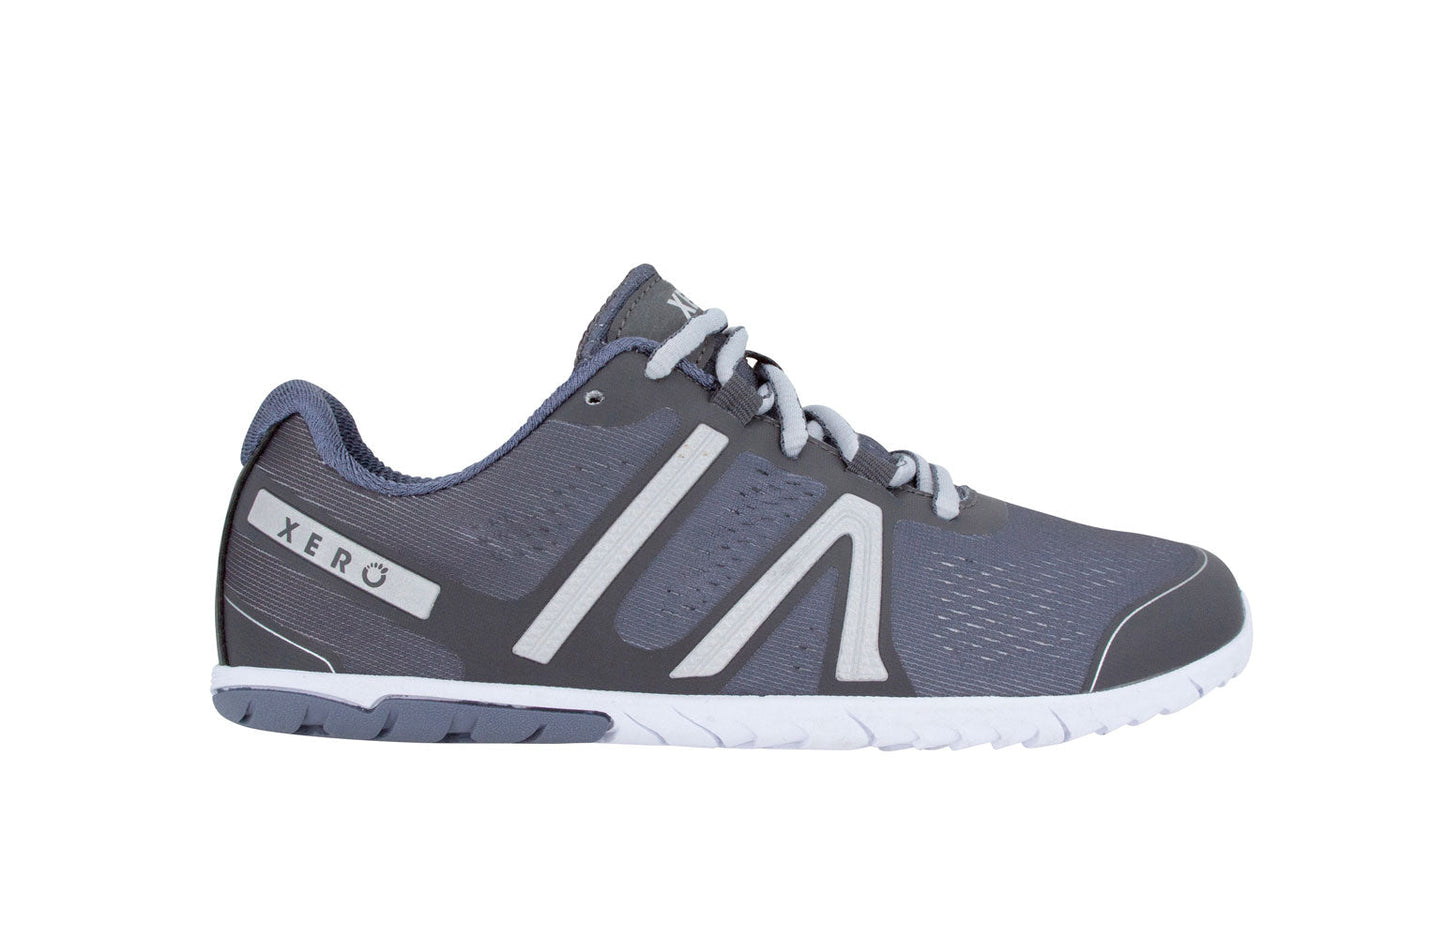 Xero Shoes HFS Womens barfods træningssko/løbesko til kvinder i farven steel gray, yderside